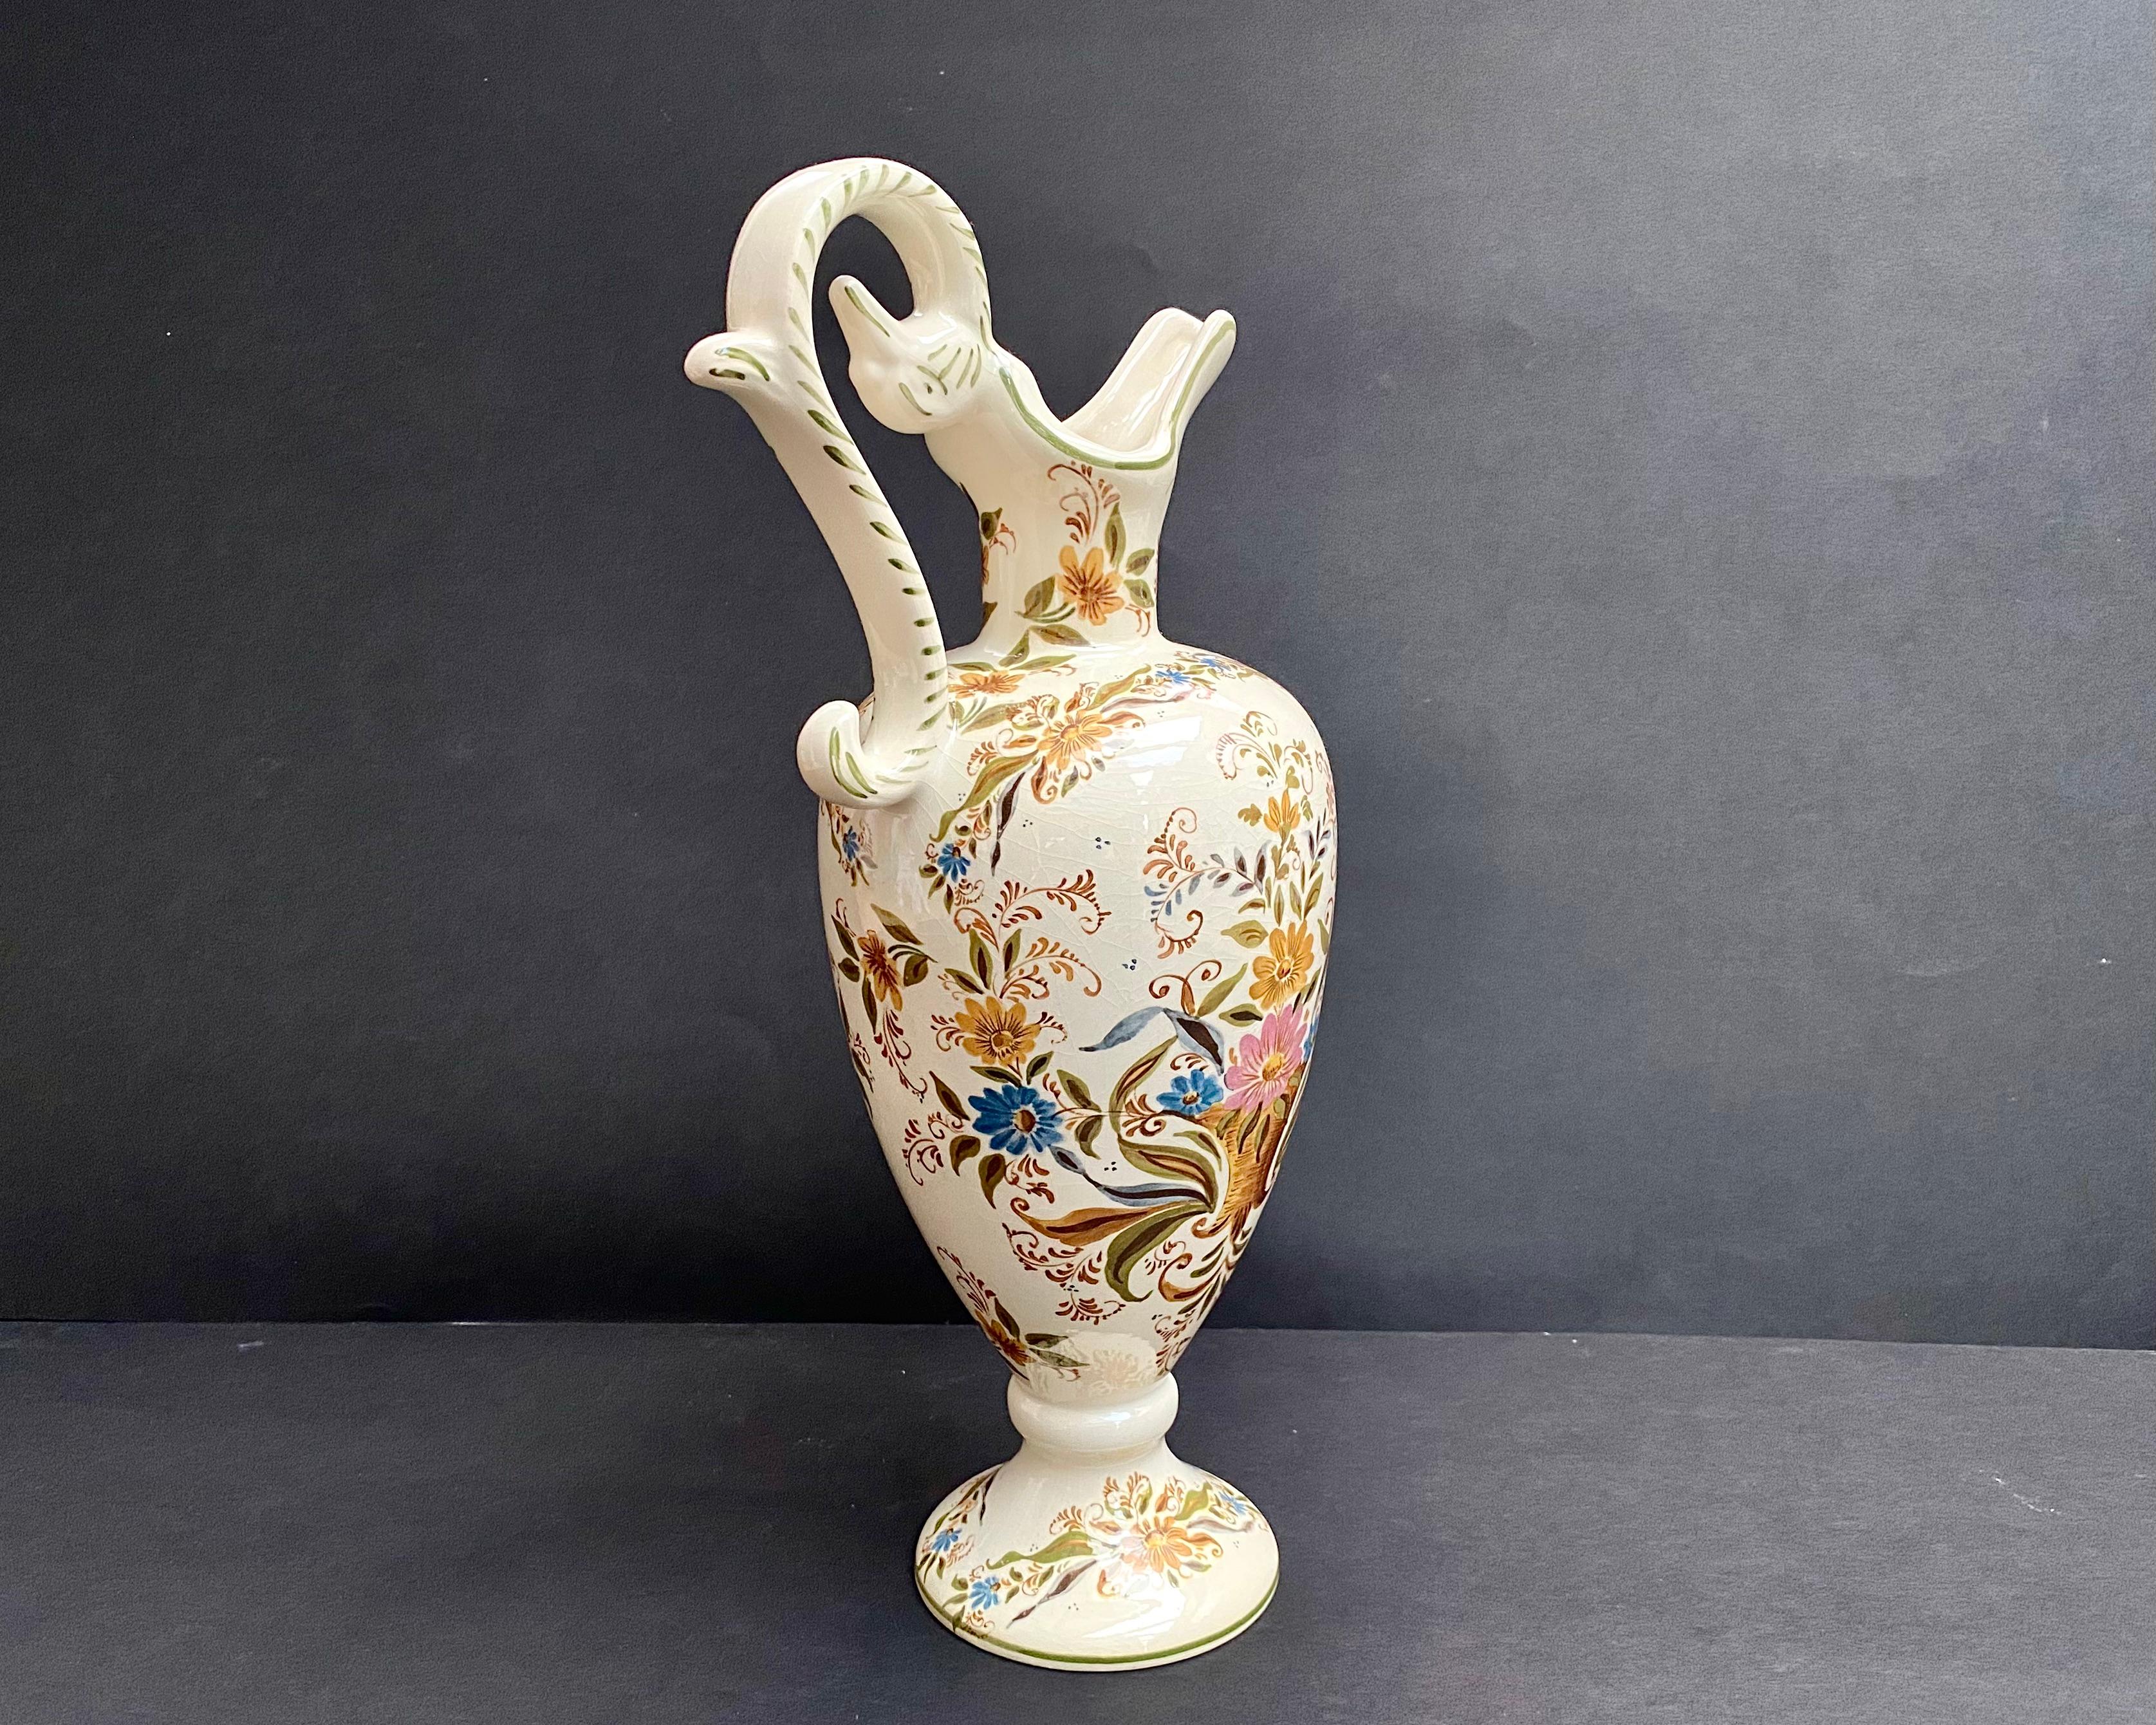 Emaillierte Fayence-Kanne aus den 1950er Jahren, hergestellt in Belgien, zugeschrieben Hubert Bequet & Holland Delft's.

Vintage Vase mit einem schönen elfenbeinfarbenen Hintergrund mit einem hellen bunten Muster von einem bunten Blumen